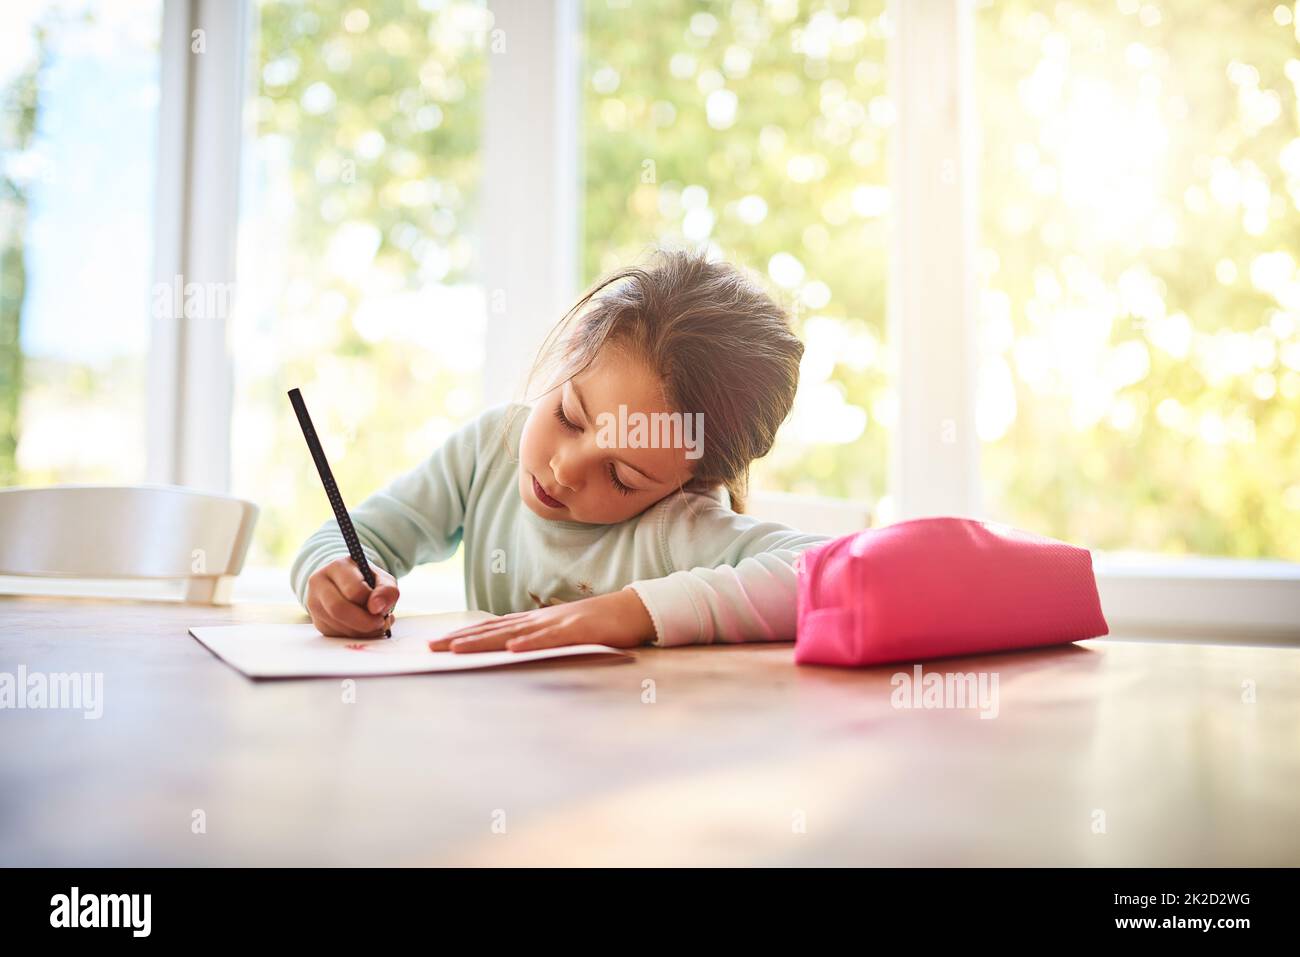 Faire preuve de créativité. Prise de vue d'une petite fille focalisée en dessinant des images dans un livre tout en étant assis à une table à la maison. Banque D'Images